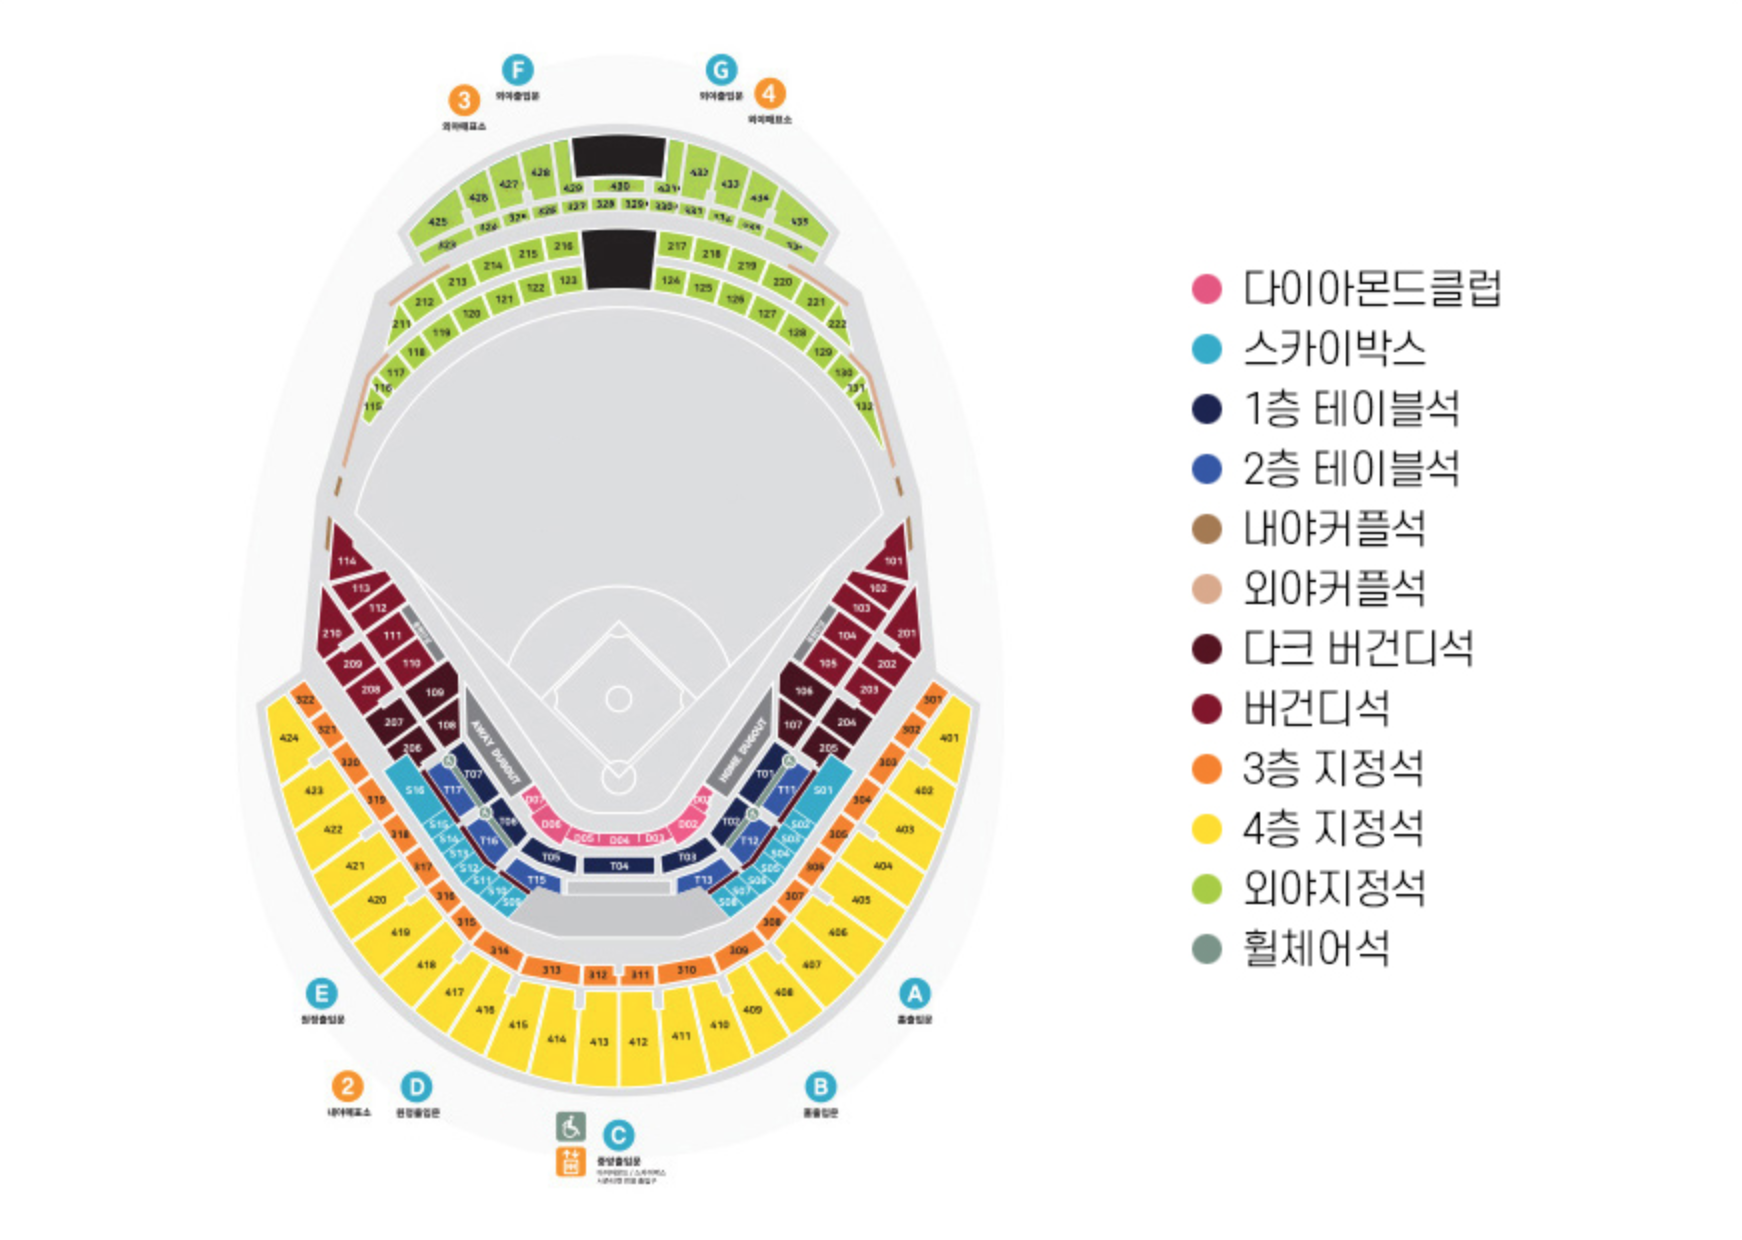 2020 프로야구 한국시리즈 티켓예매 역대 우승팀과 최대 우승감독